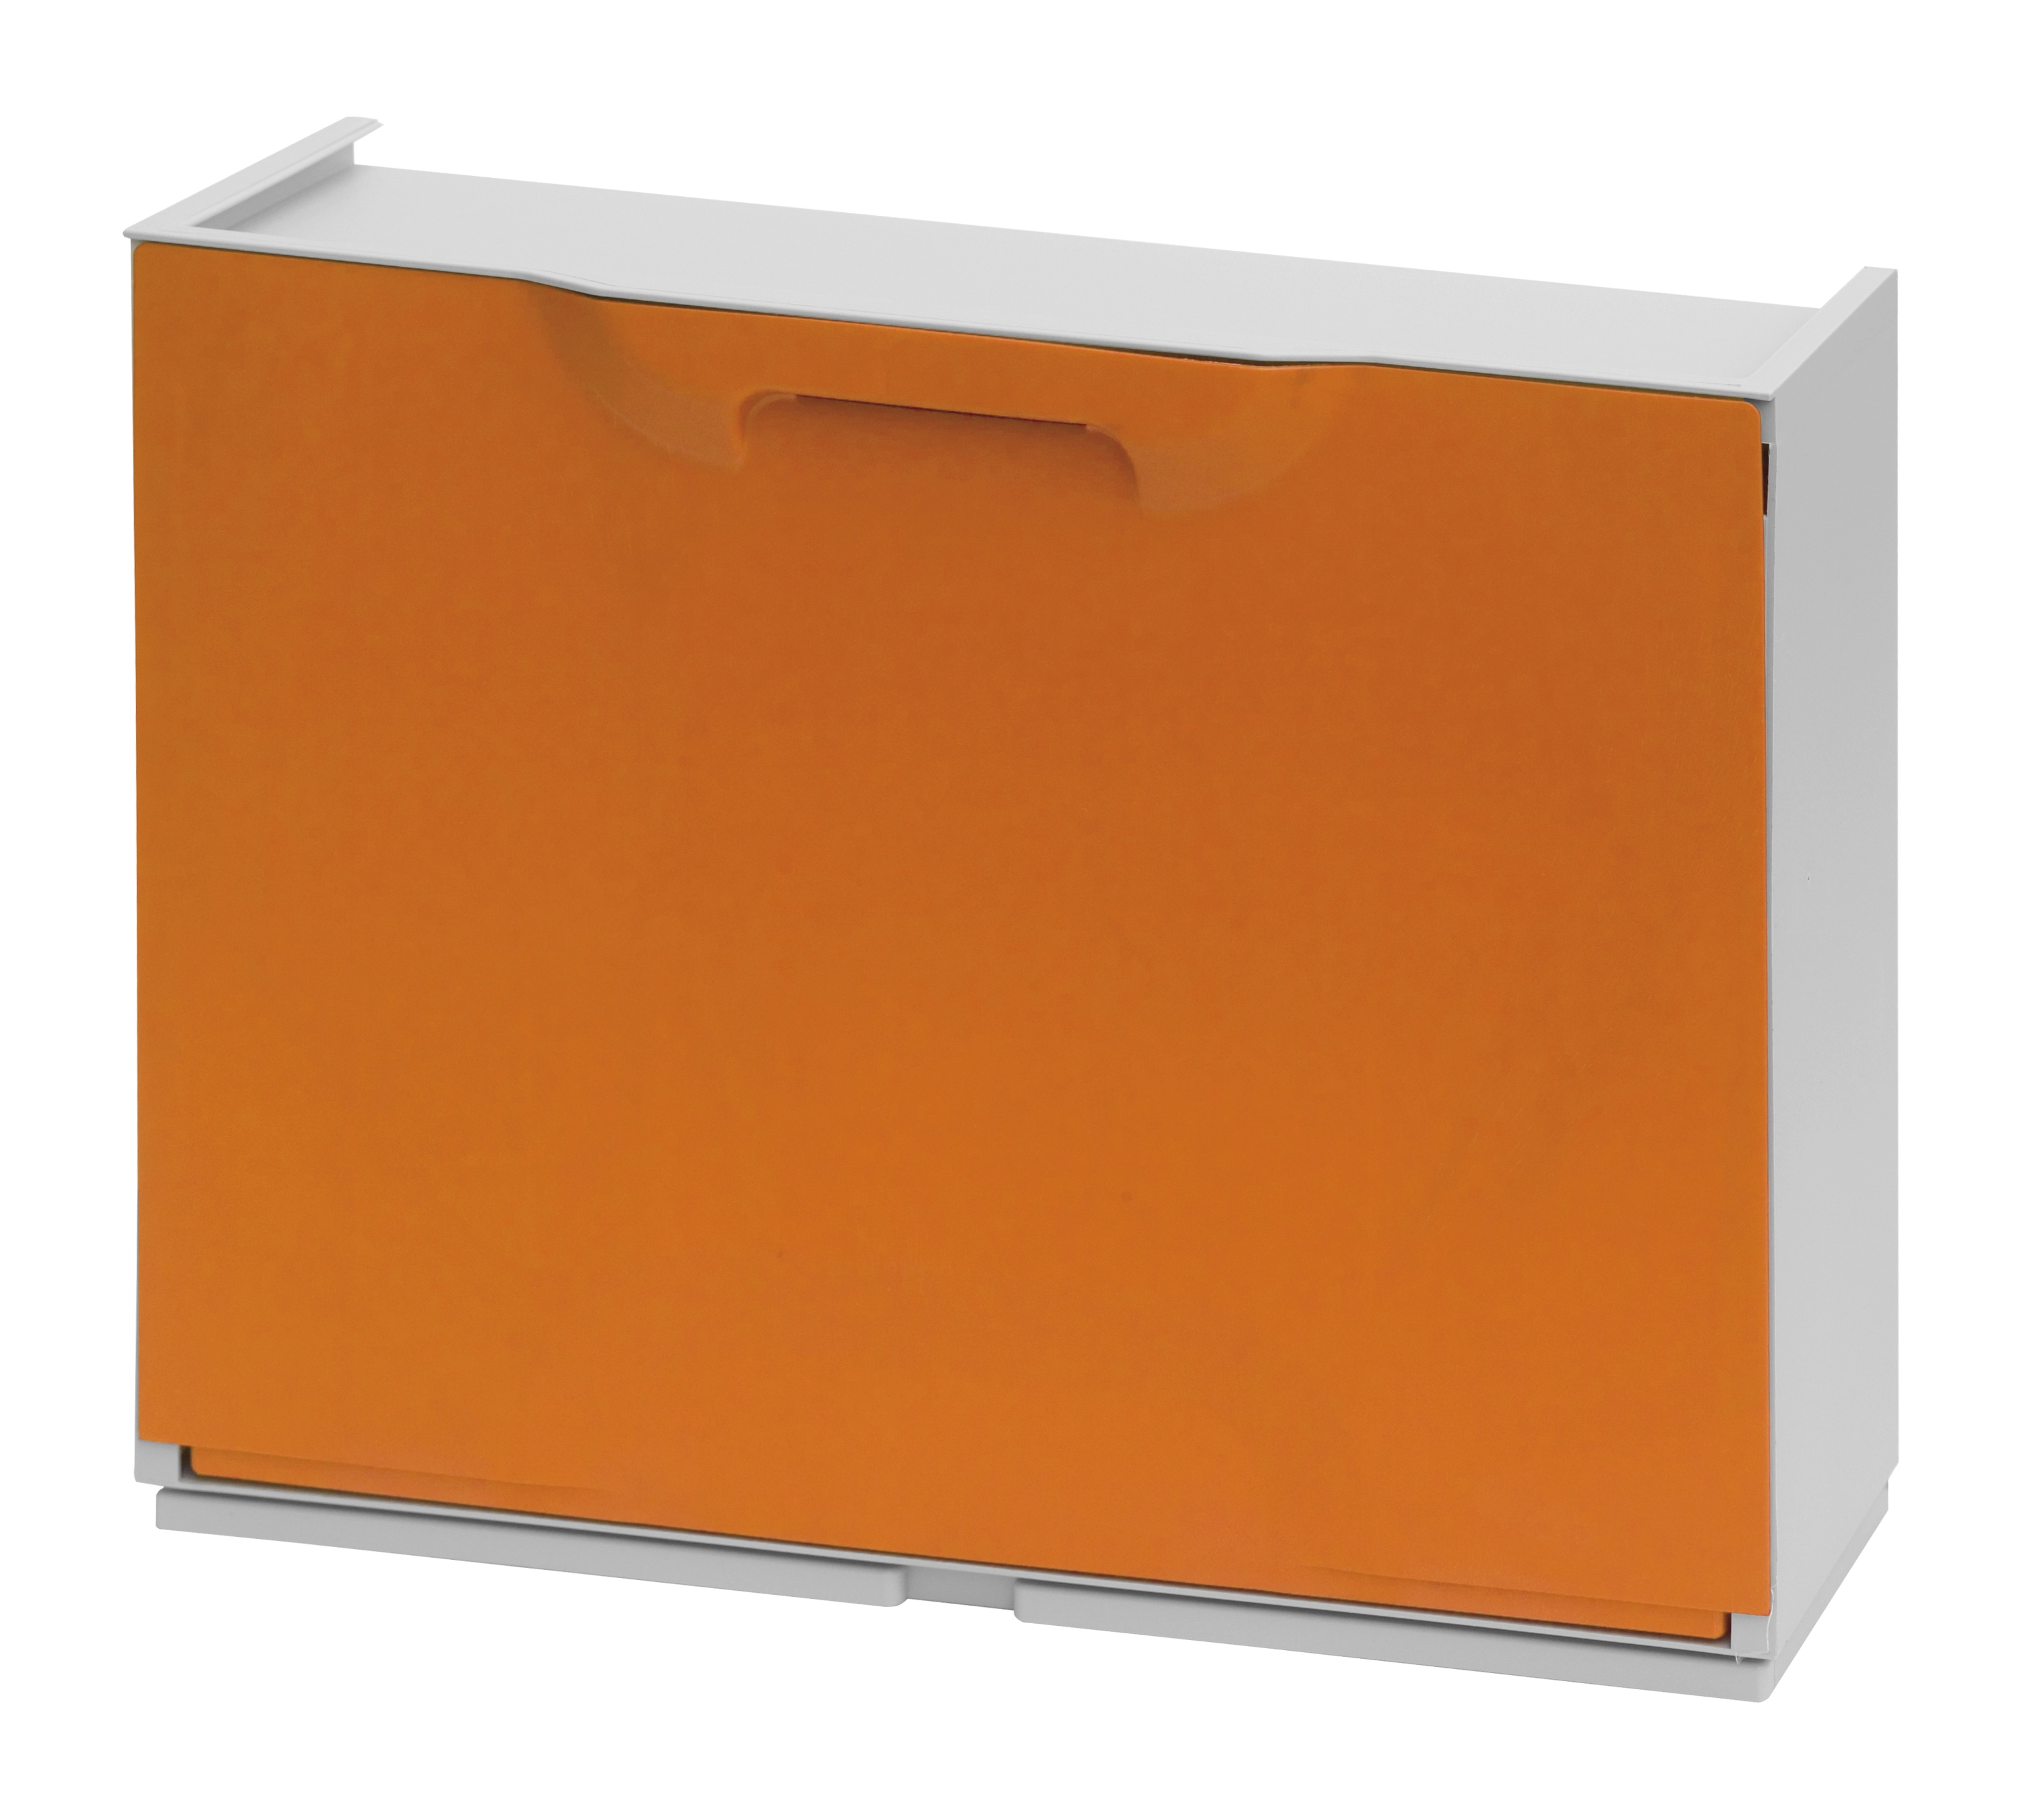 Scarpiera componibile in polipropilene 51x17,3x40,1 cm arancio